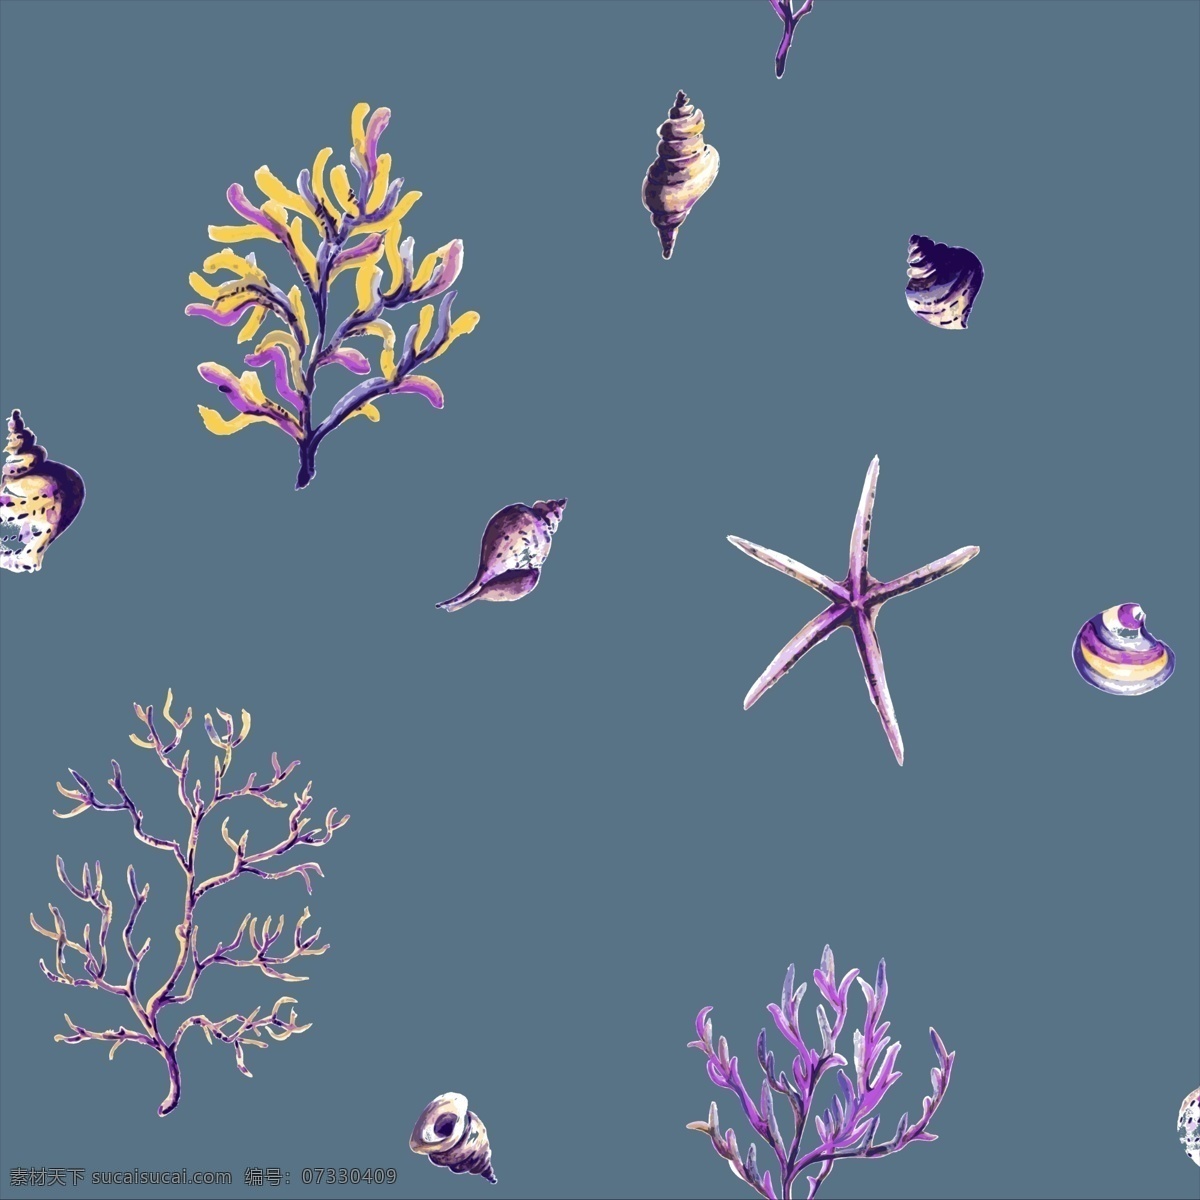 海草 海星 珊瑚 贝壳 蓝色 紫色 儿童 分层 背景素材